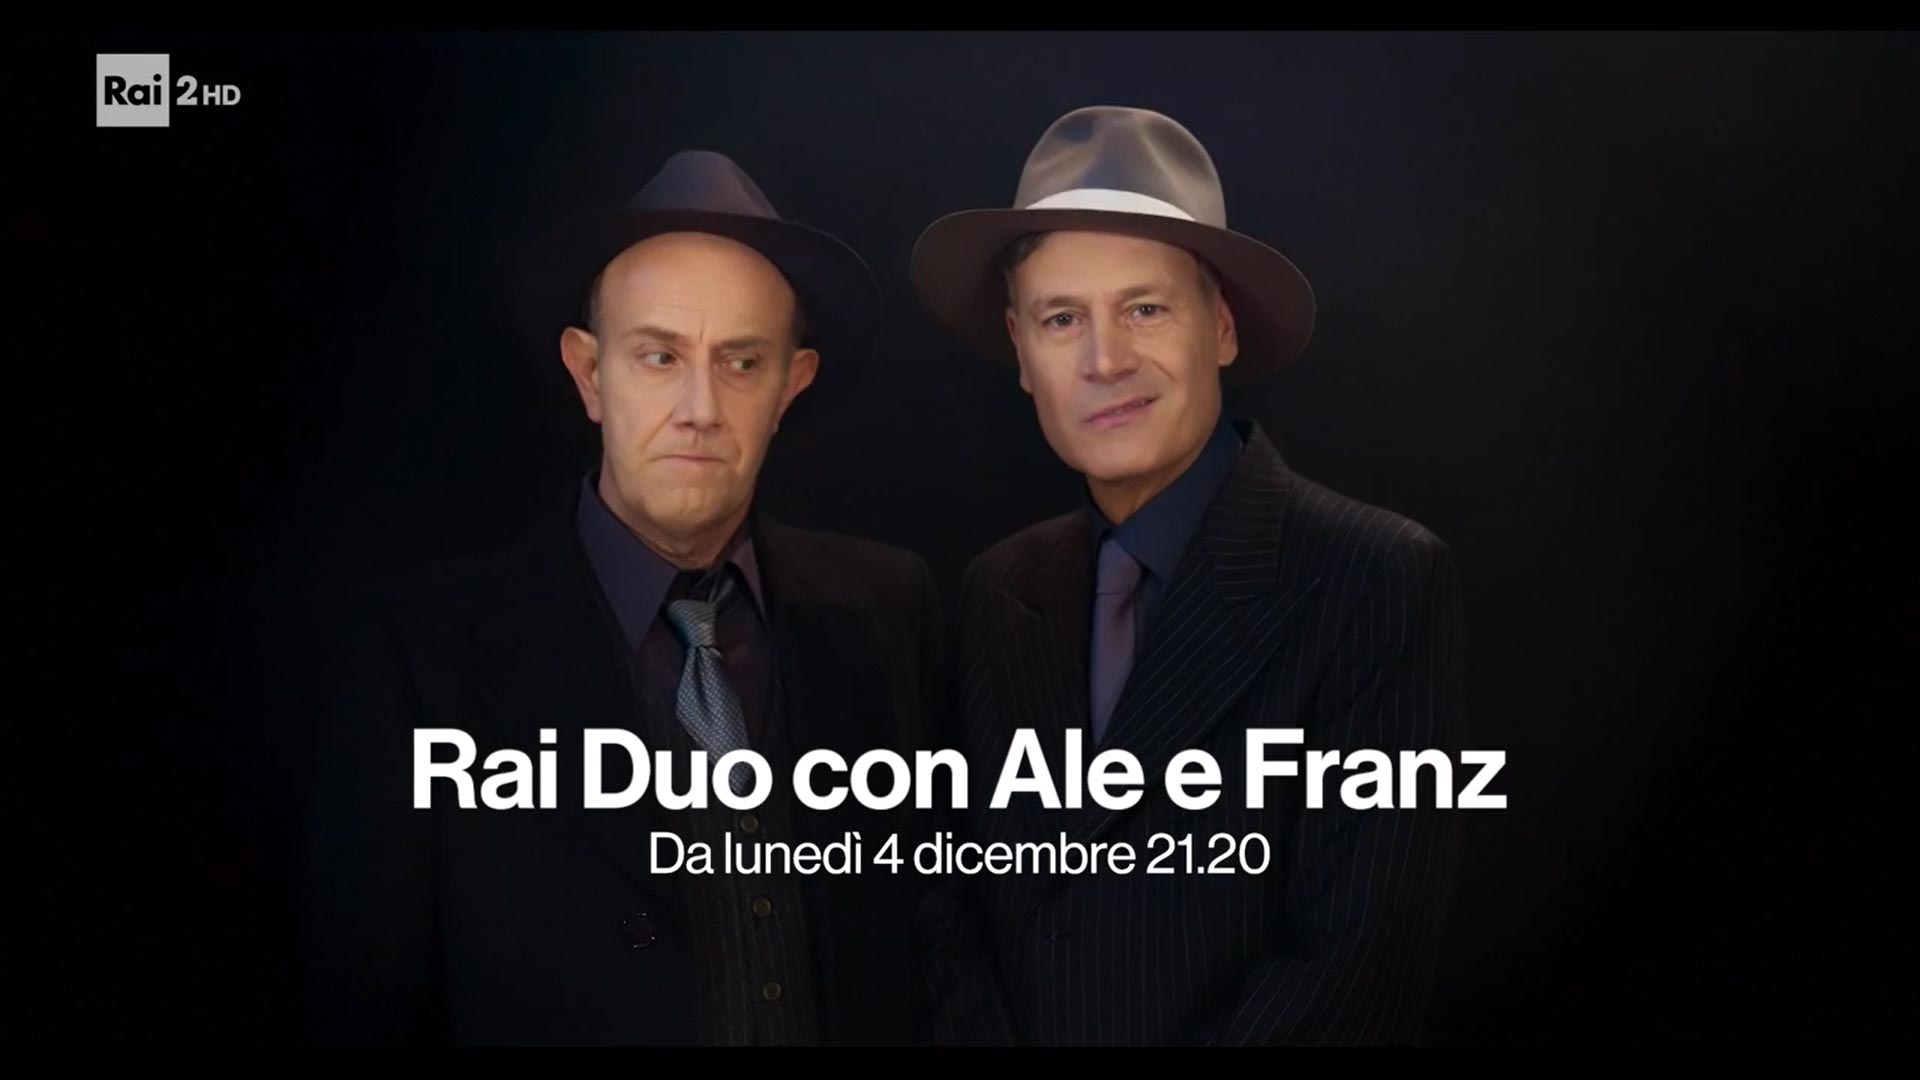 RaiDuo con Ale & Franz su Rai2 - Promo